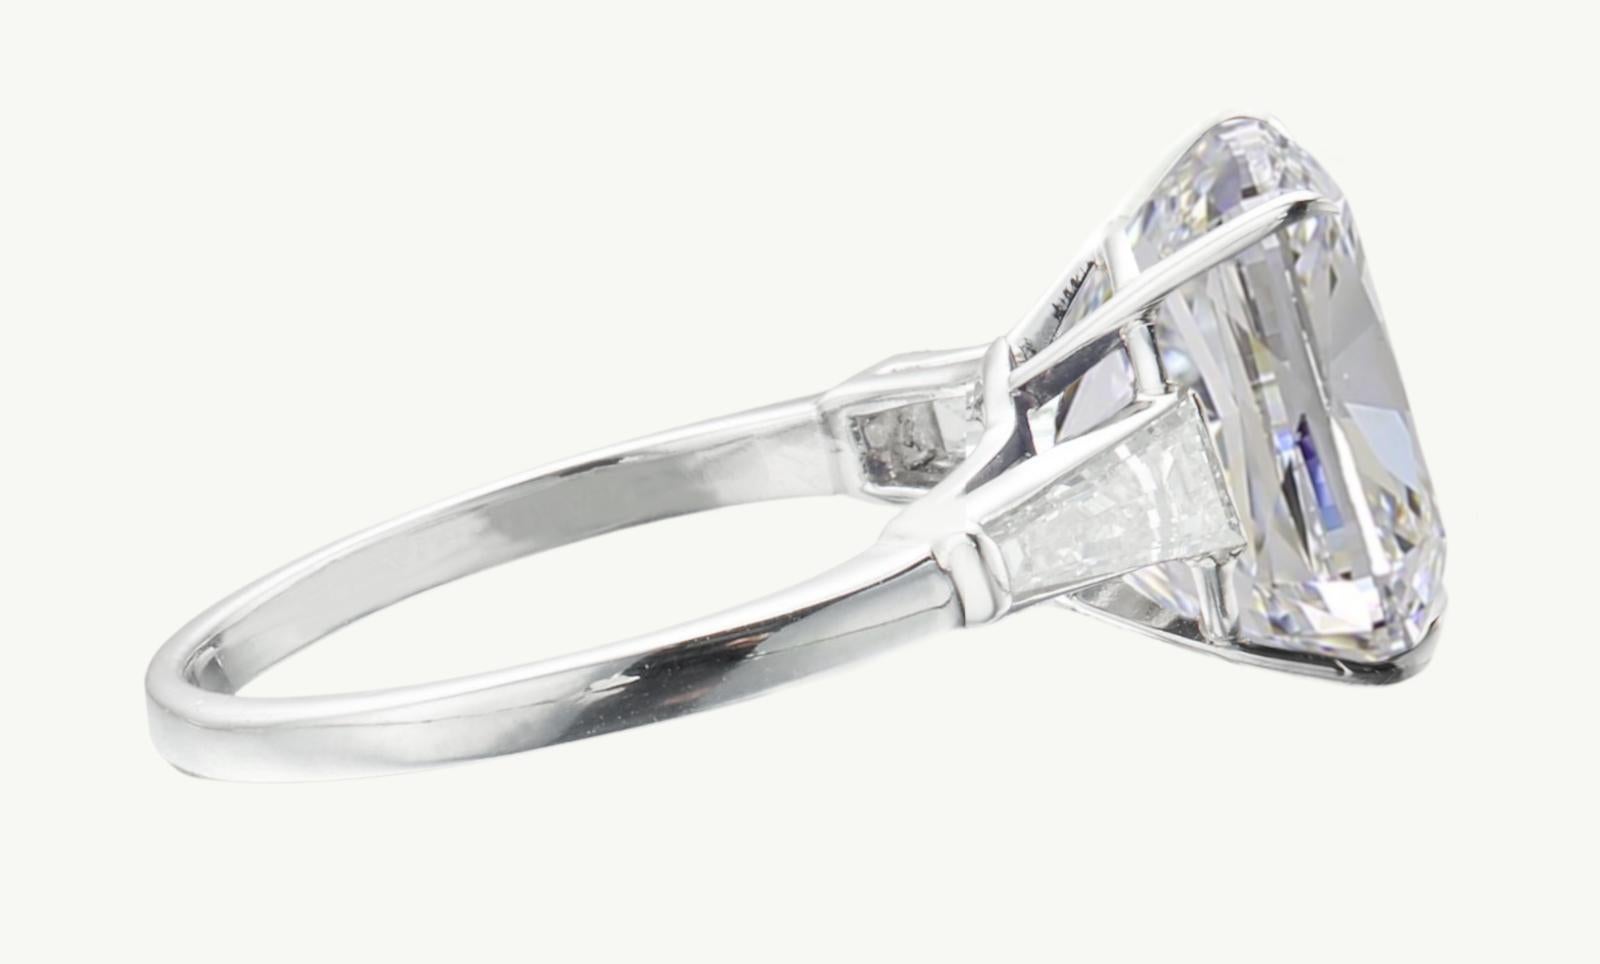 Wir präsentieren einen außergewöhnlichen Platinring, der zeitlosen Charme ausstrahlt und in dessen Mittelpunkt ein prächtiger GIA-zertifizierter Kissenbrillant steht. Der zentrale Diamant von bemerkenswerten 5 Karat weist tadellose Merkmale auf: